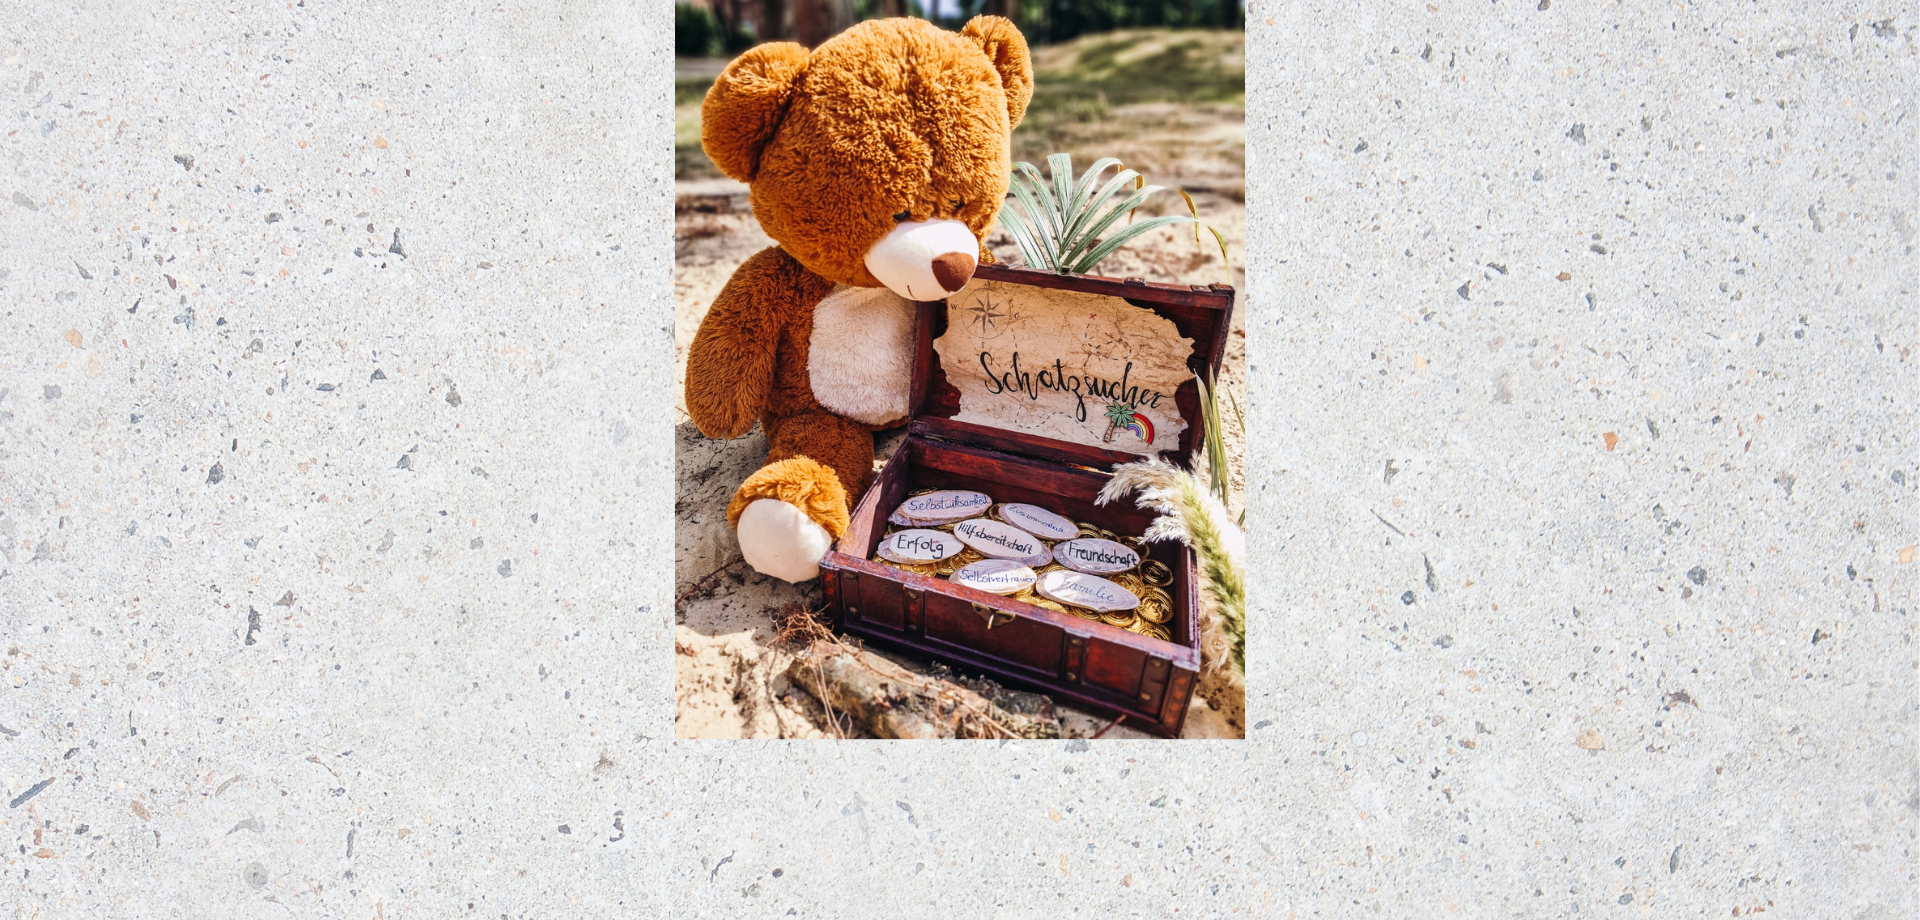 Das Bild zeigt einen Plüsch-Teddybär, der neben einer kleinen Schatzkiste sitzt.